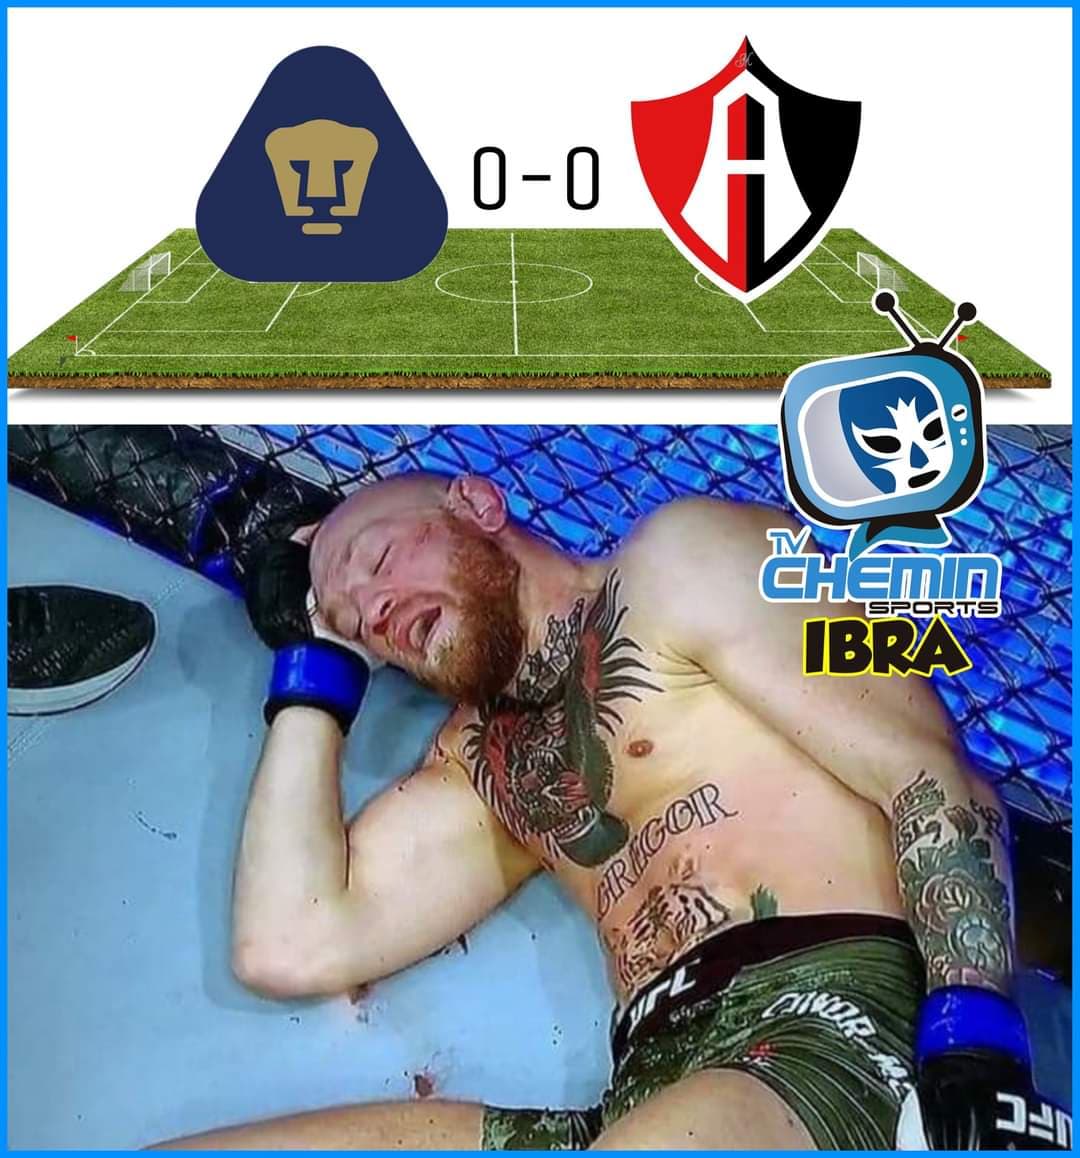 Memes de la Liga MX, Jornada 4